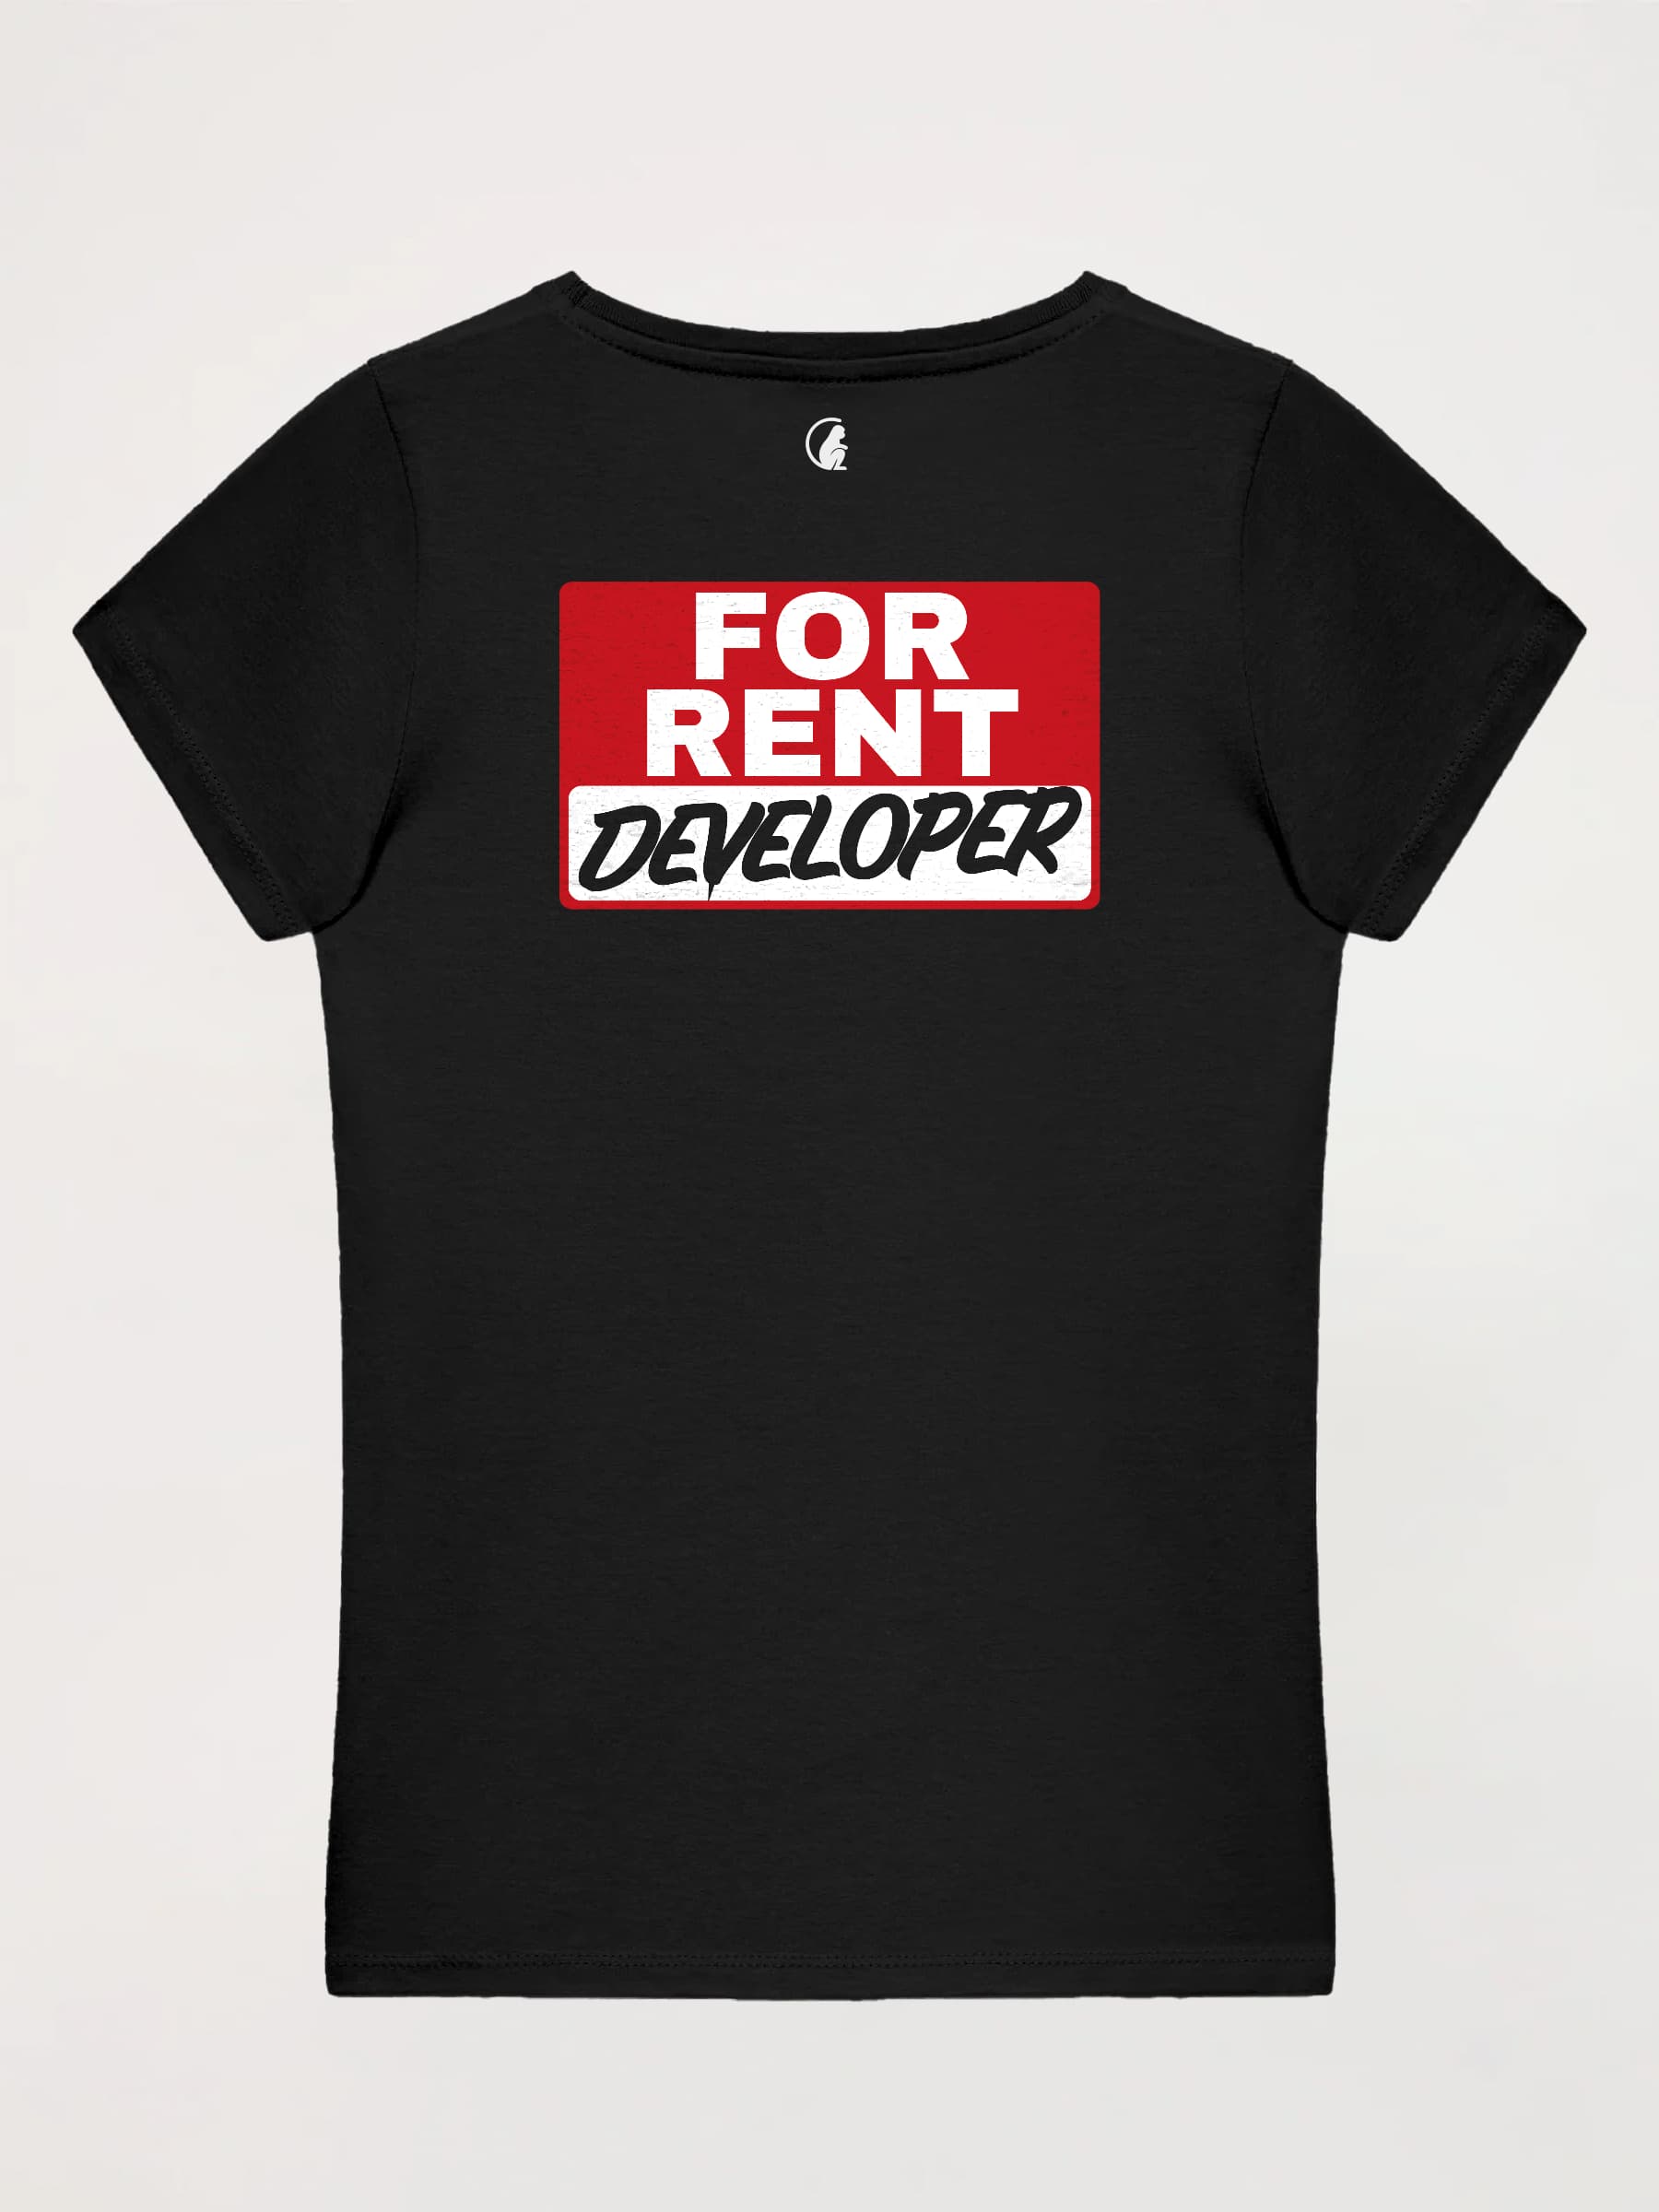 Woman T-shirt Developer for Rent